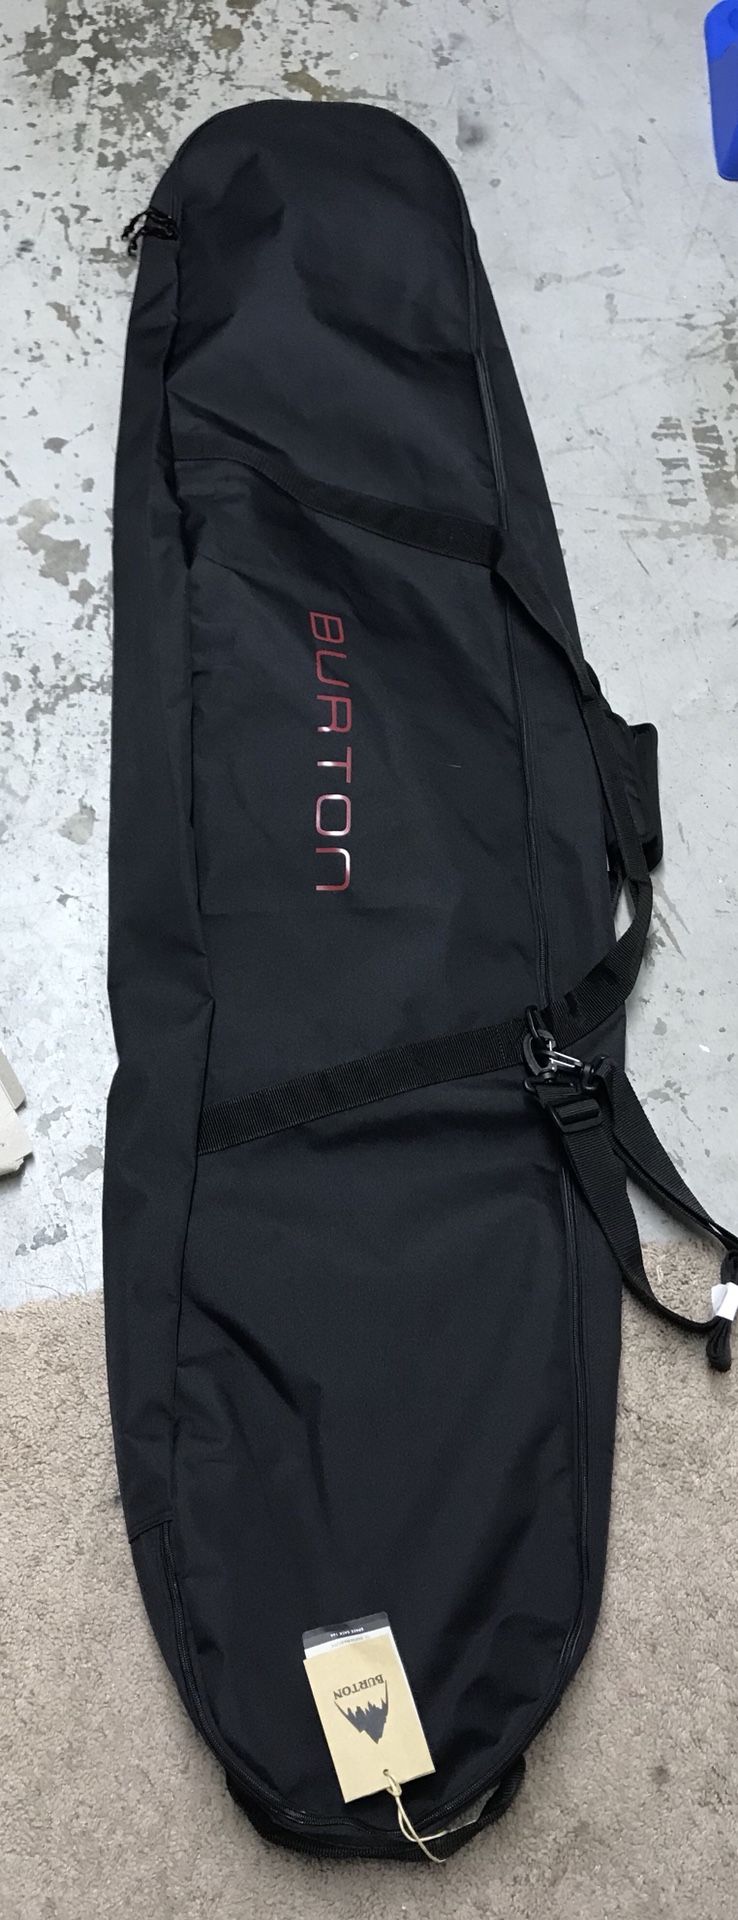 Brand New With Tags Burton Bag